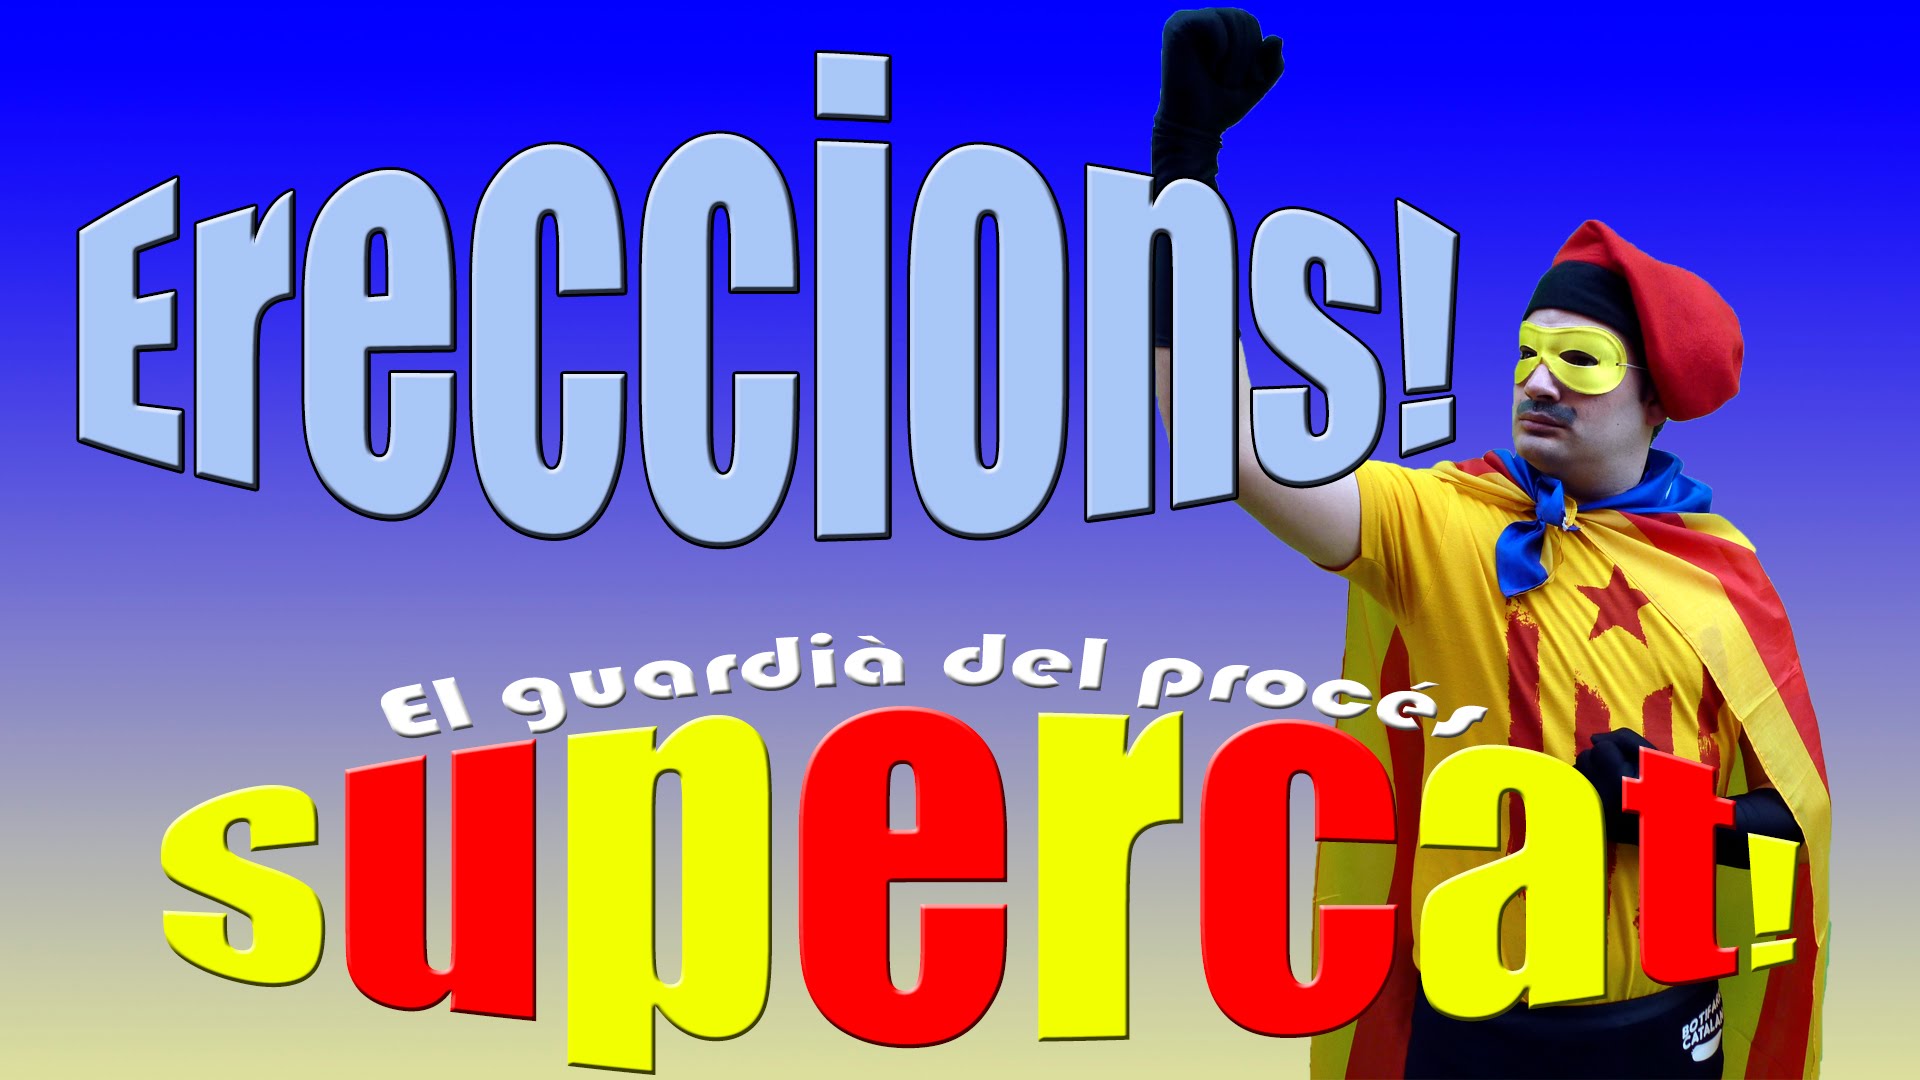 SuperCat - El guardià del Procés - Capítol 12 - Ereccions! de SuperCat